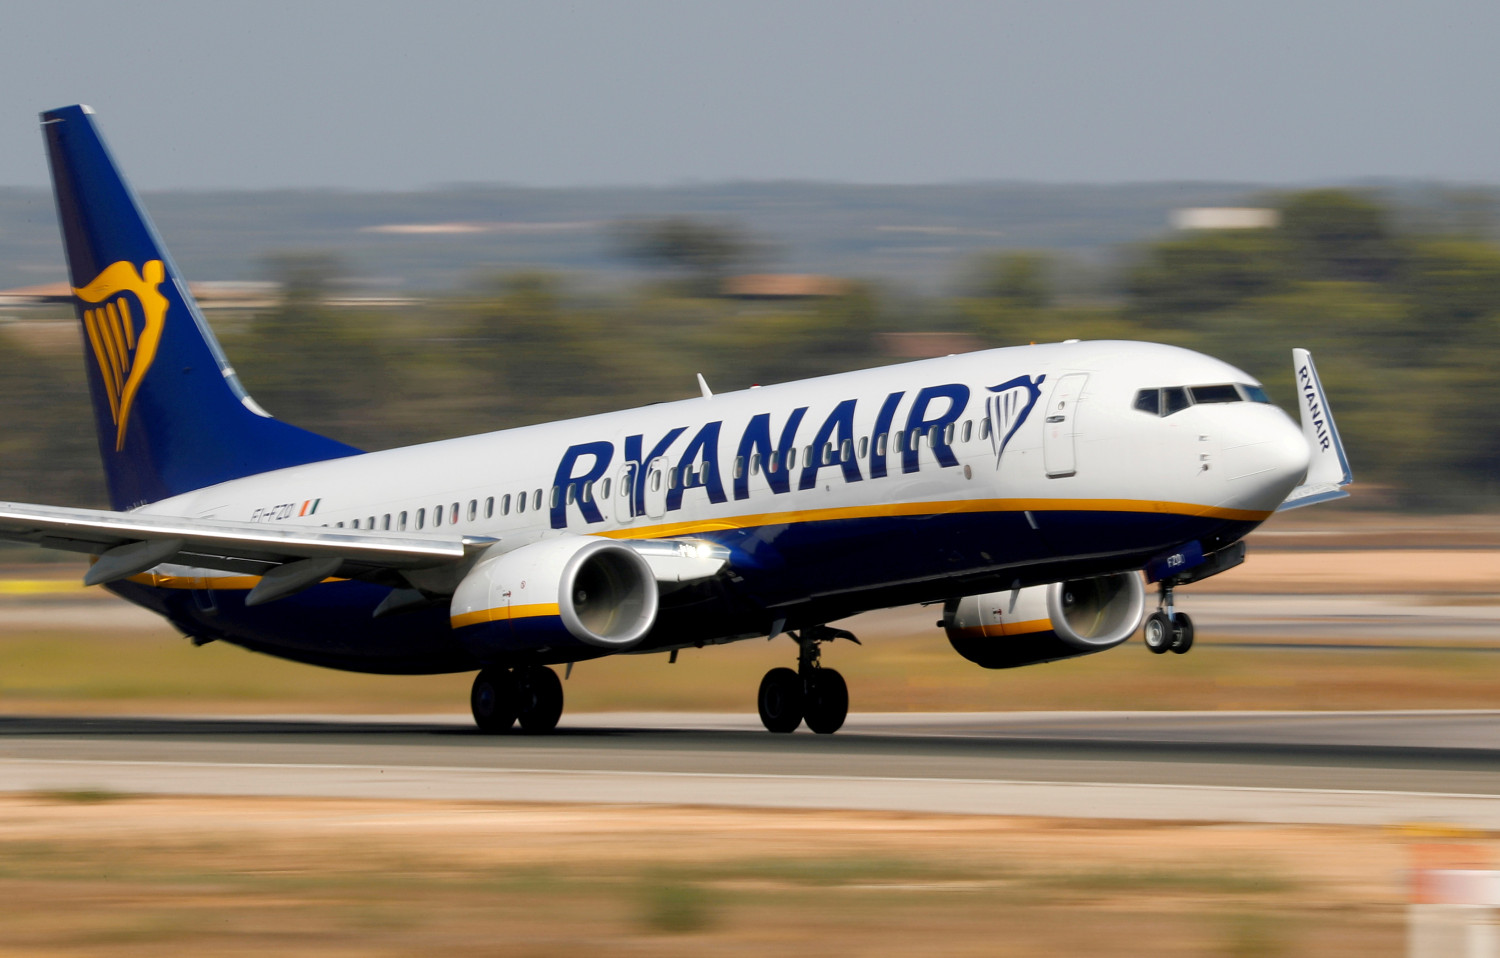 Ryanair se asocia con Citi para invertir el exceso de efectivo en proyectos sostenibles